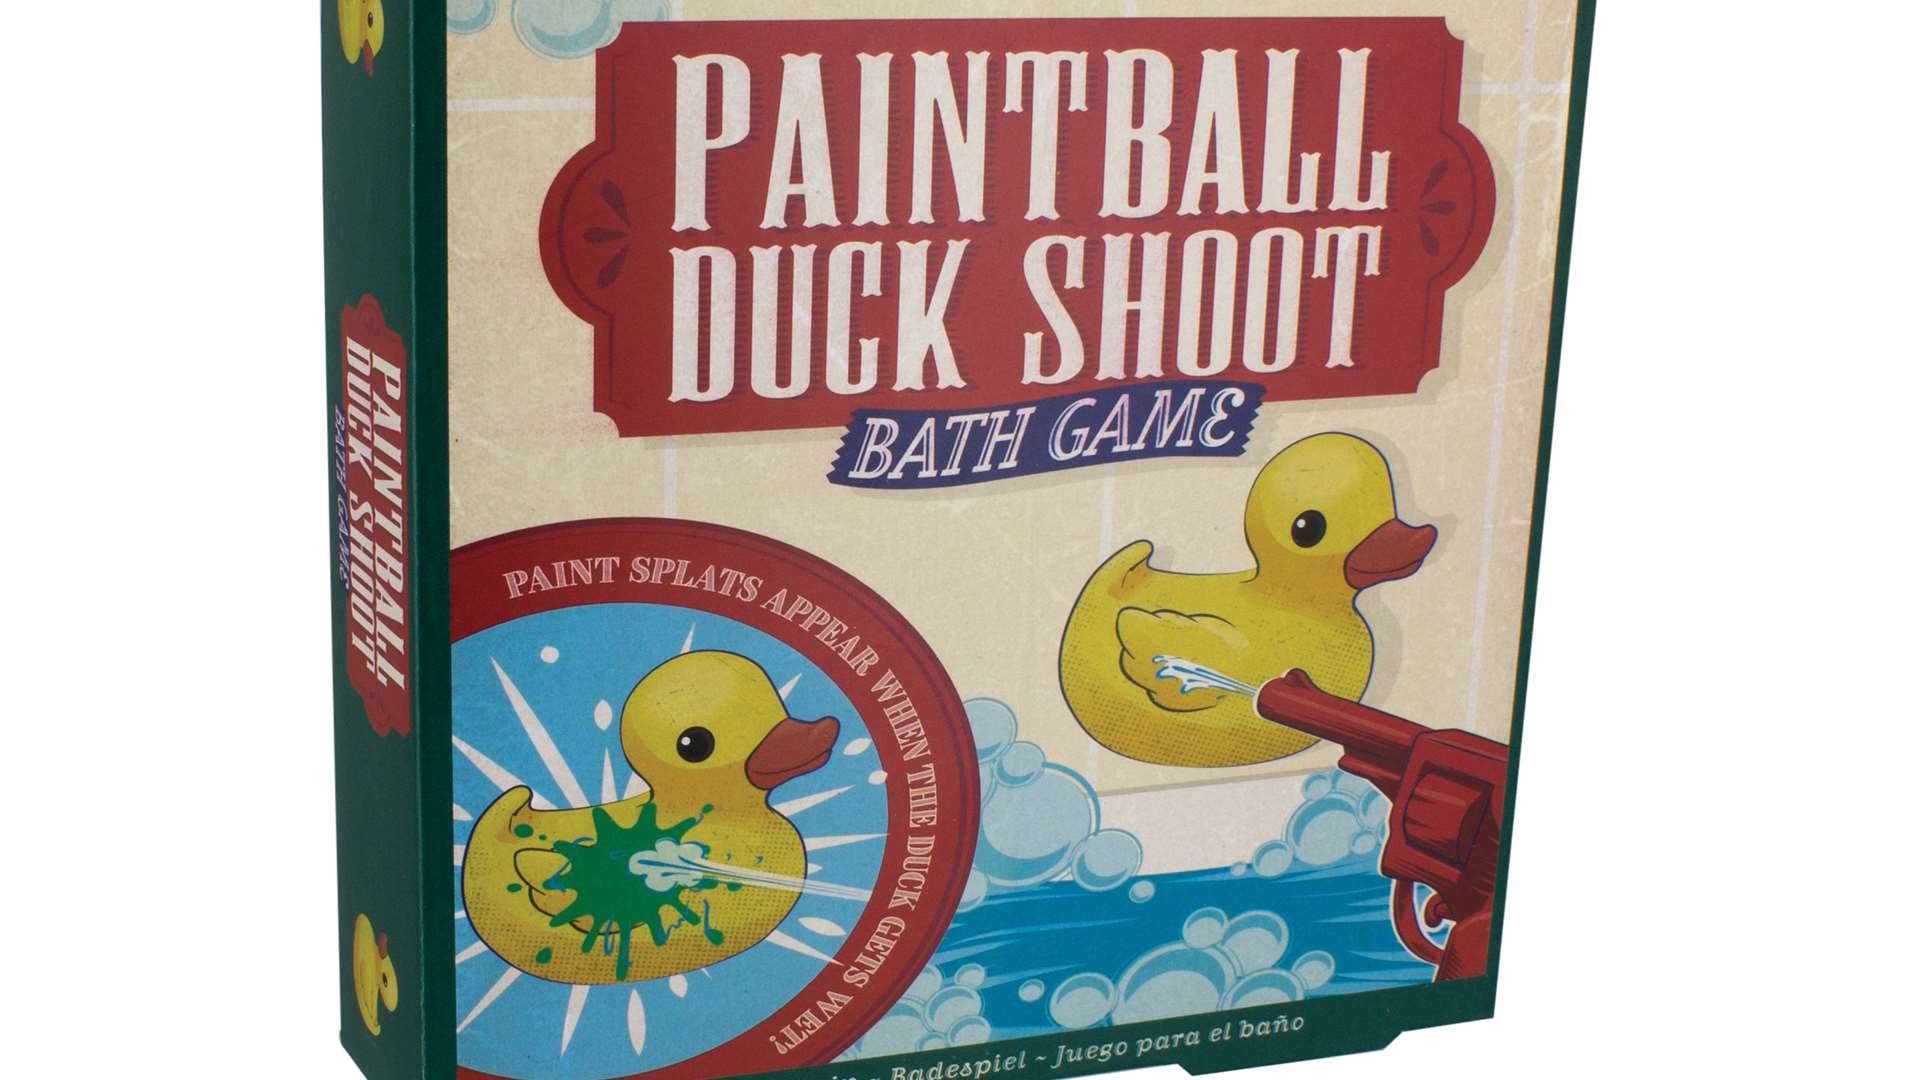 Duck shoot bath game